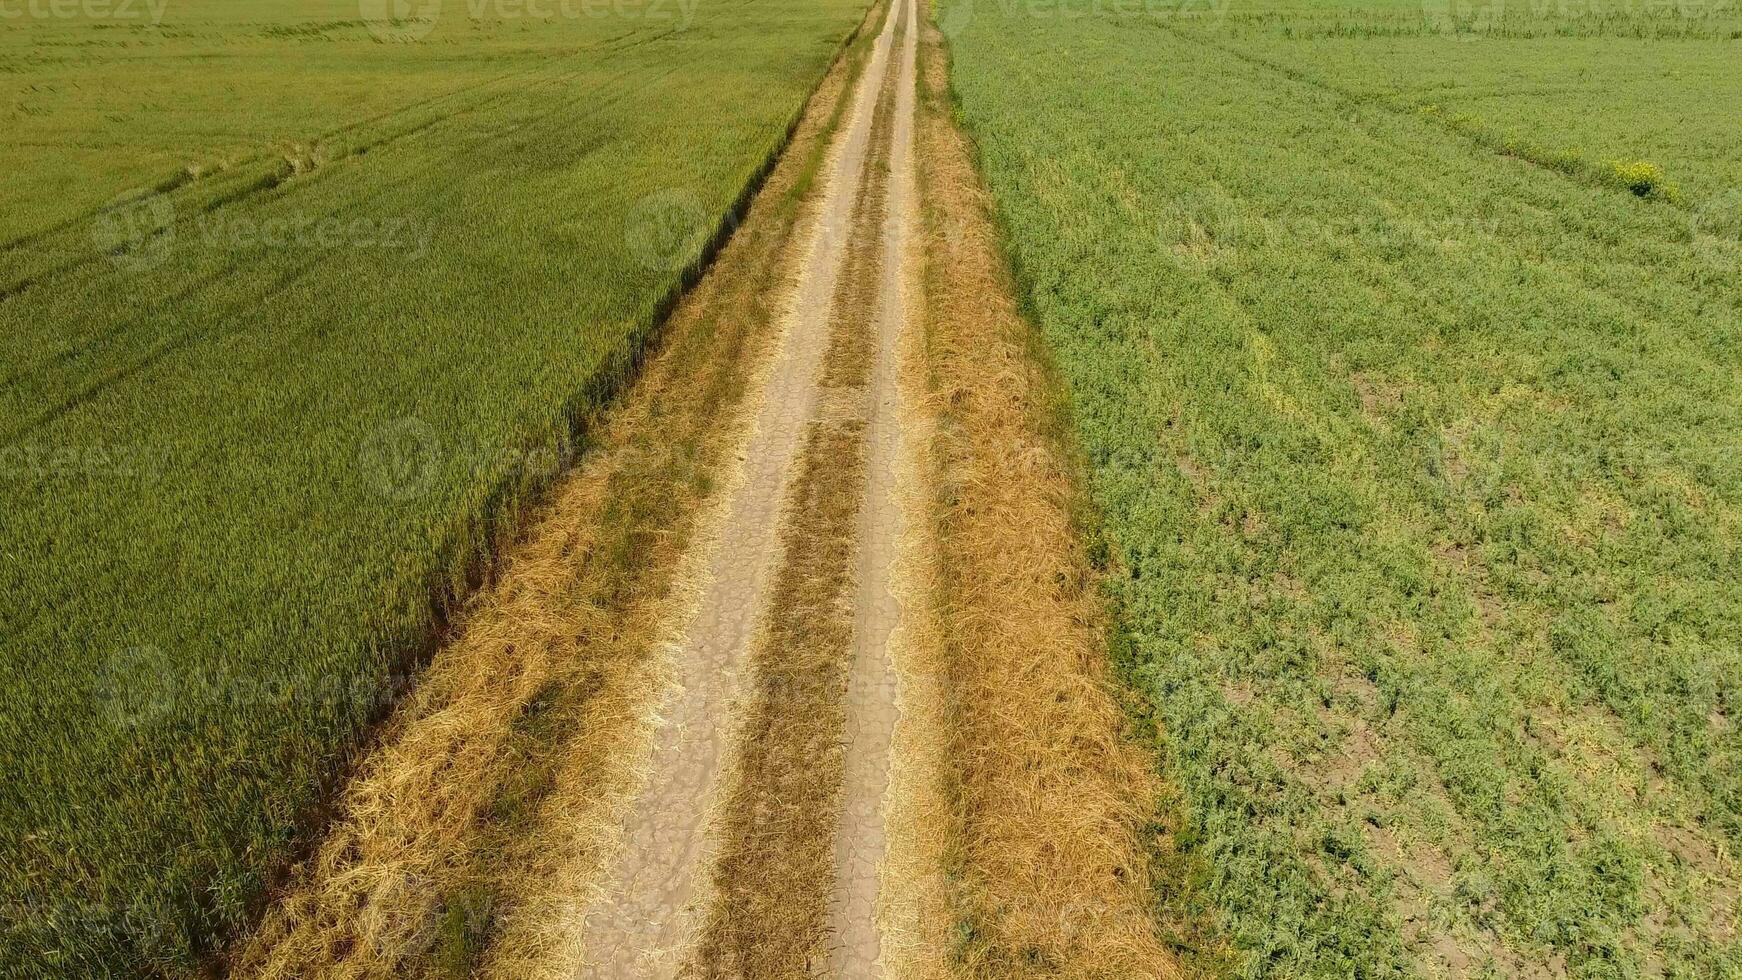 un suciedad la carretera Entre el campos de trigo y guisantes. foto